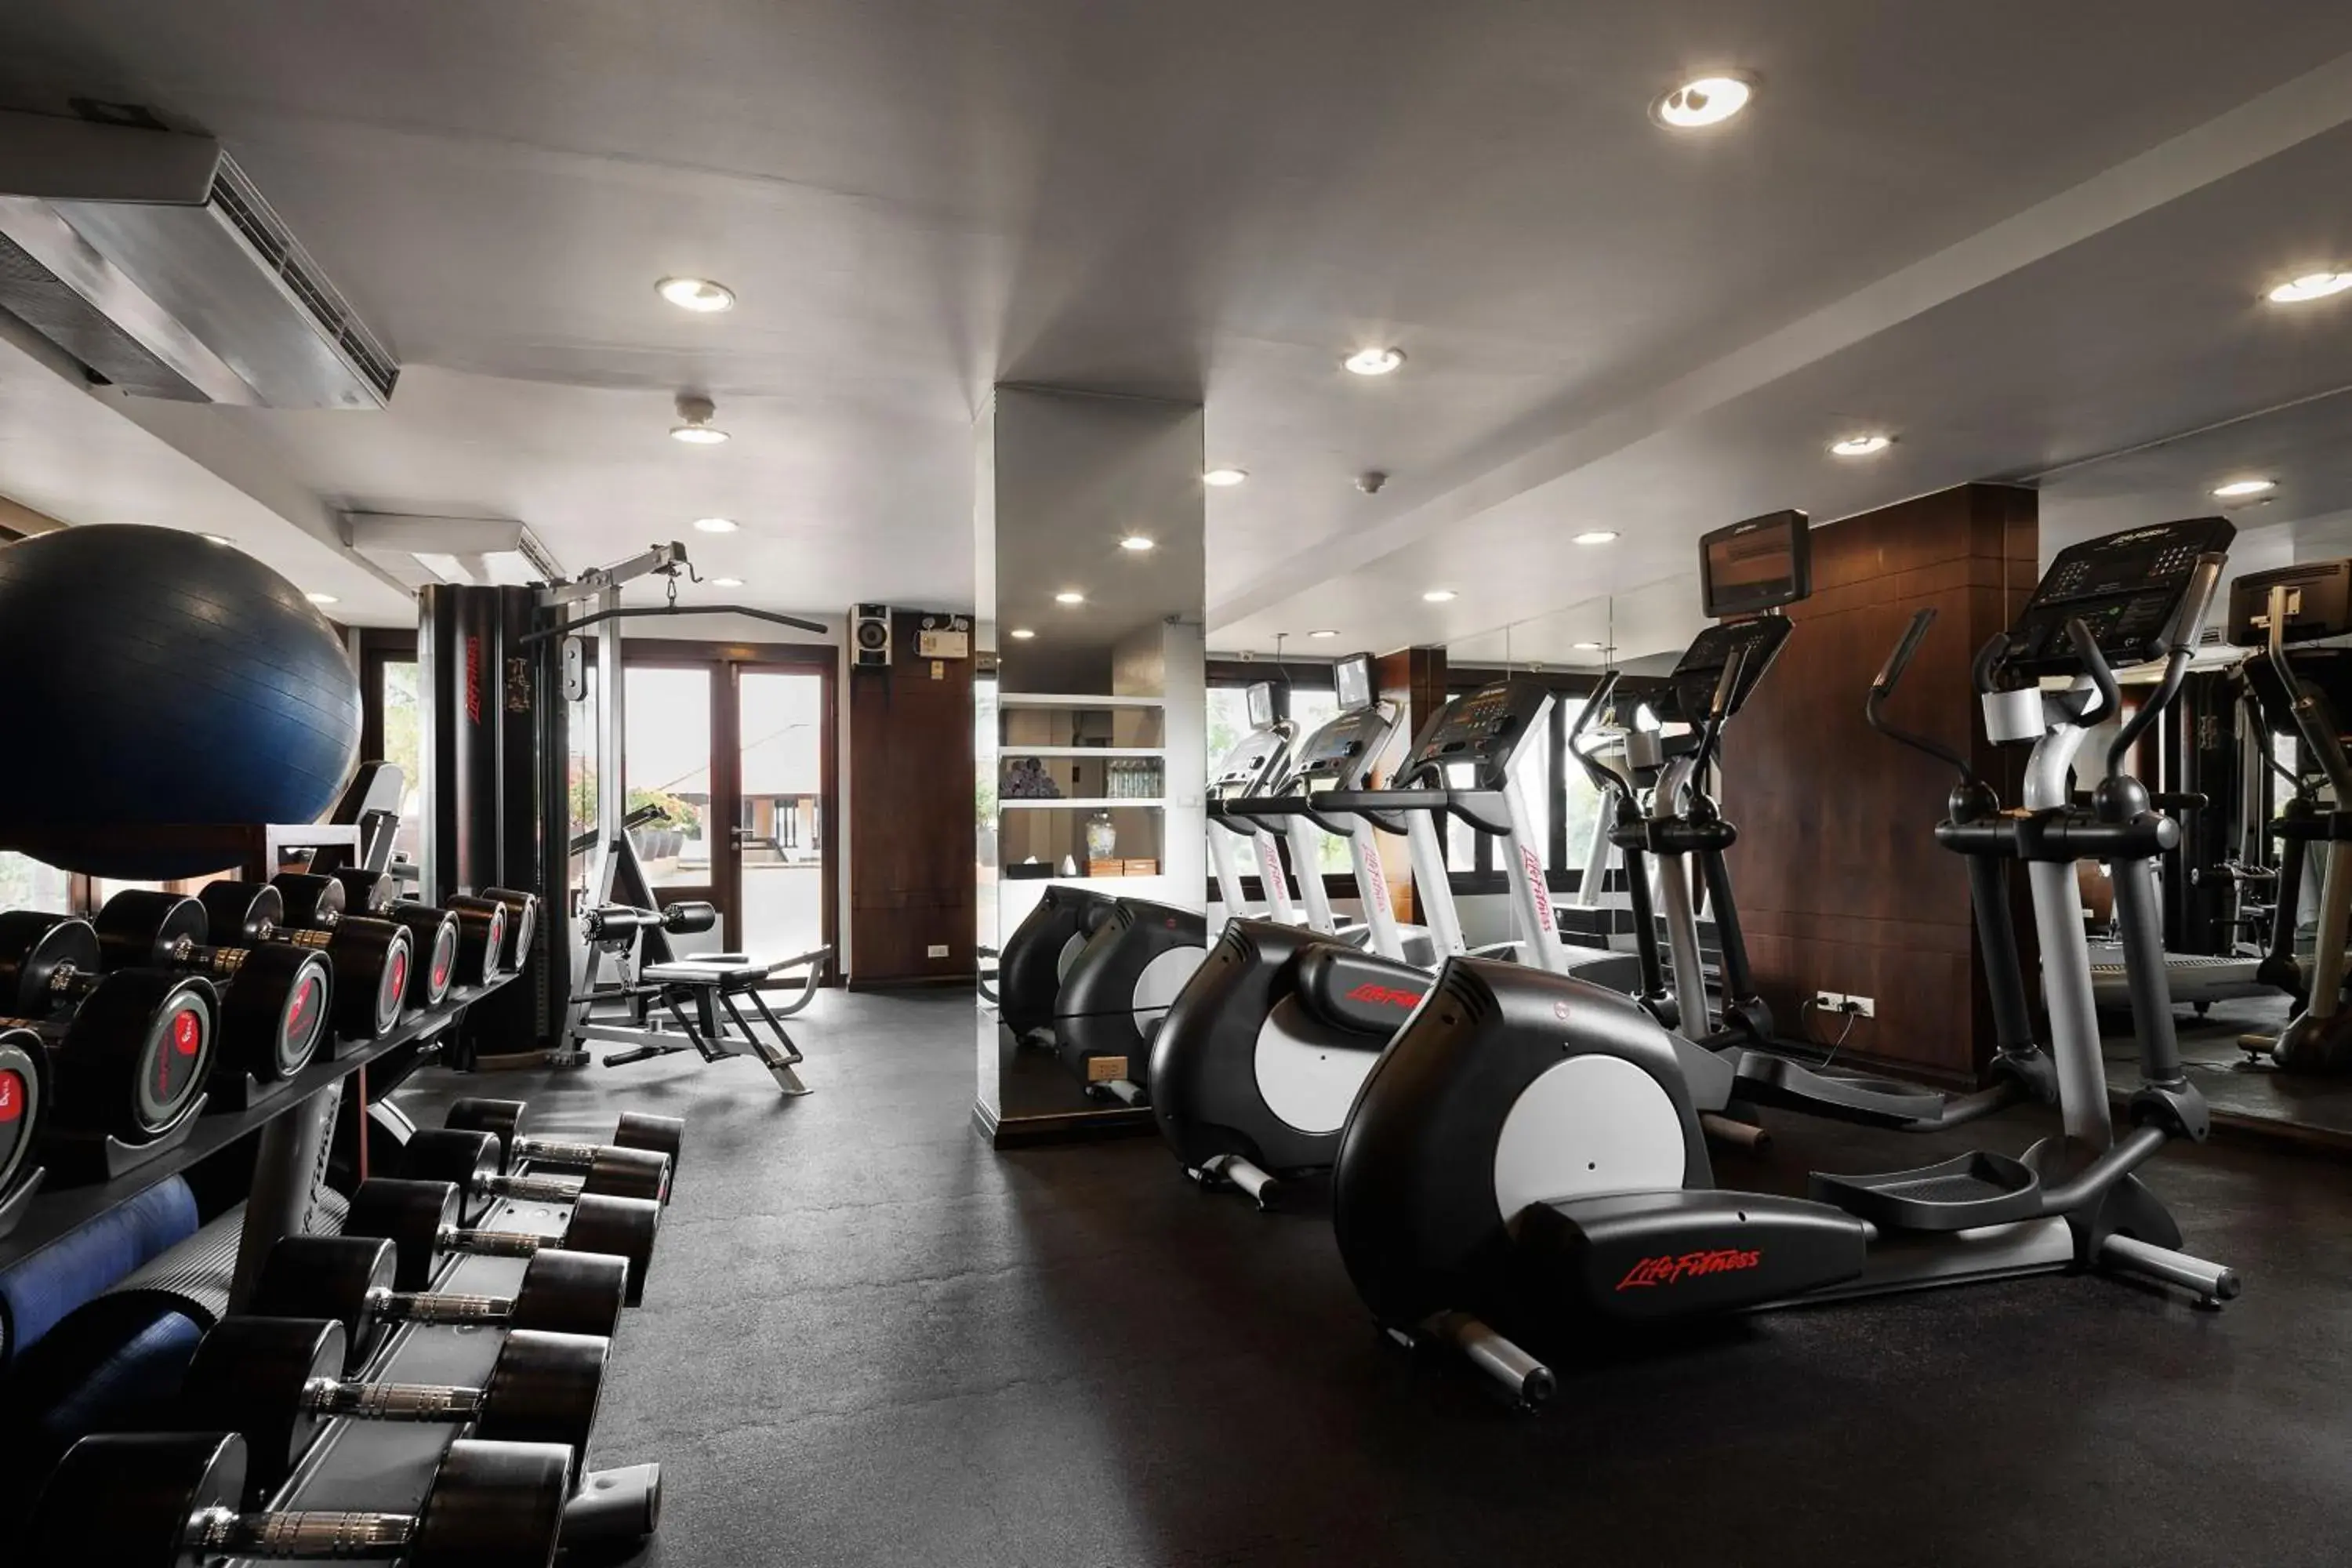 Fitness centre/facilities, Fitness Center/Facilities in Renaissance Koh Samui Resort & Spa